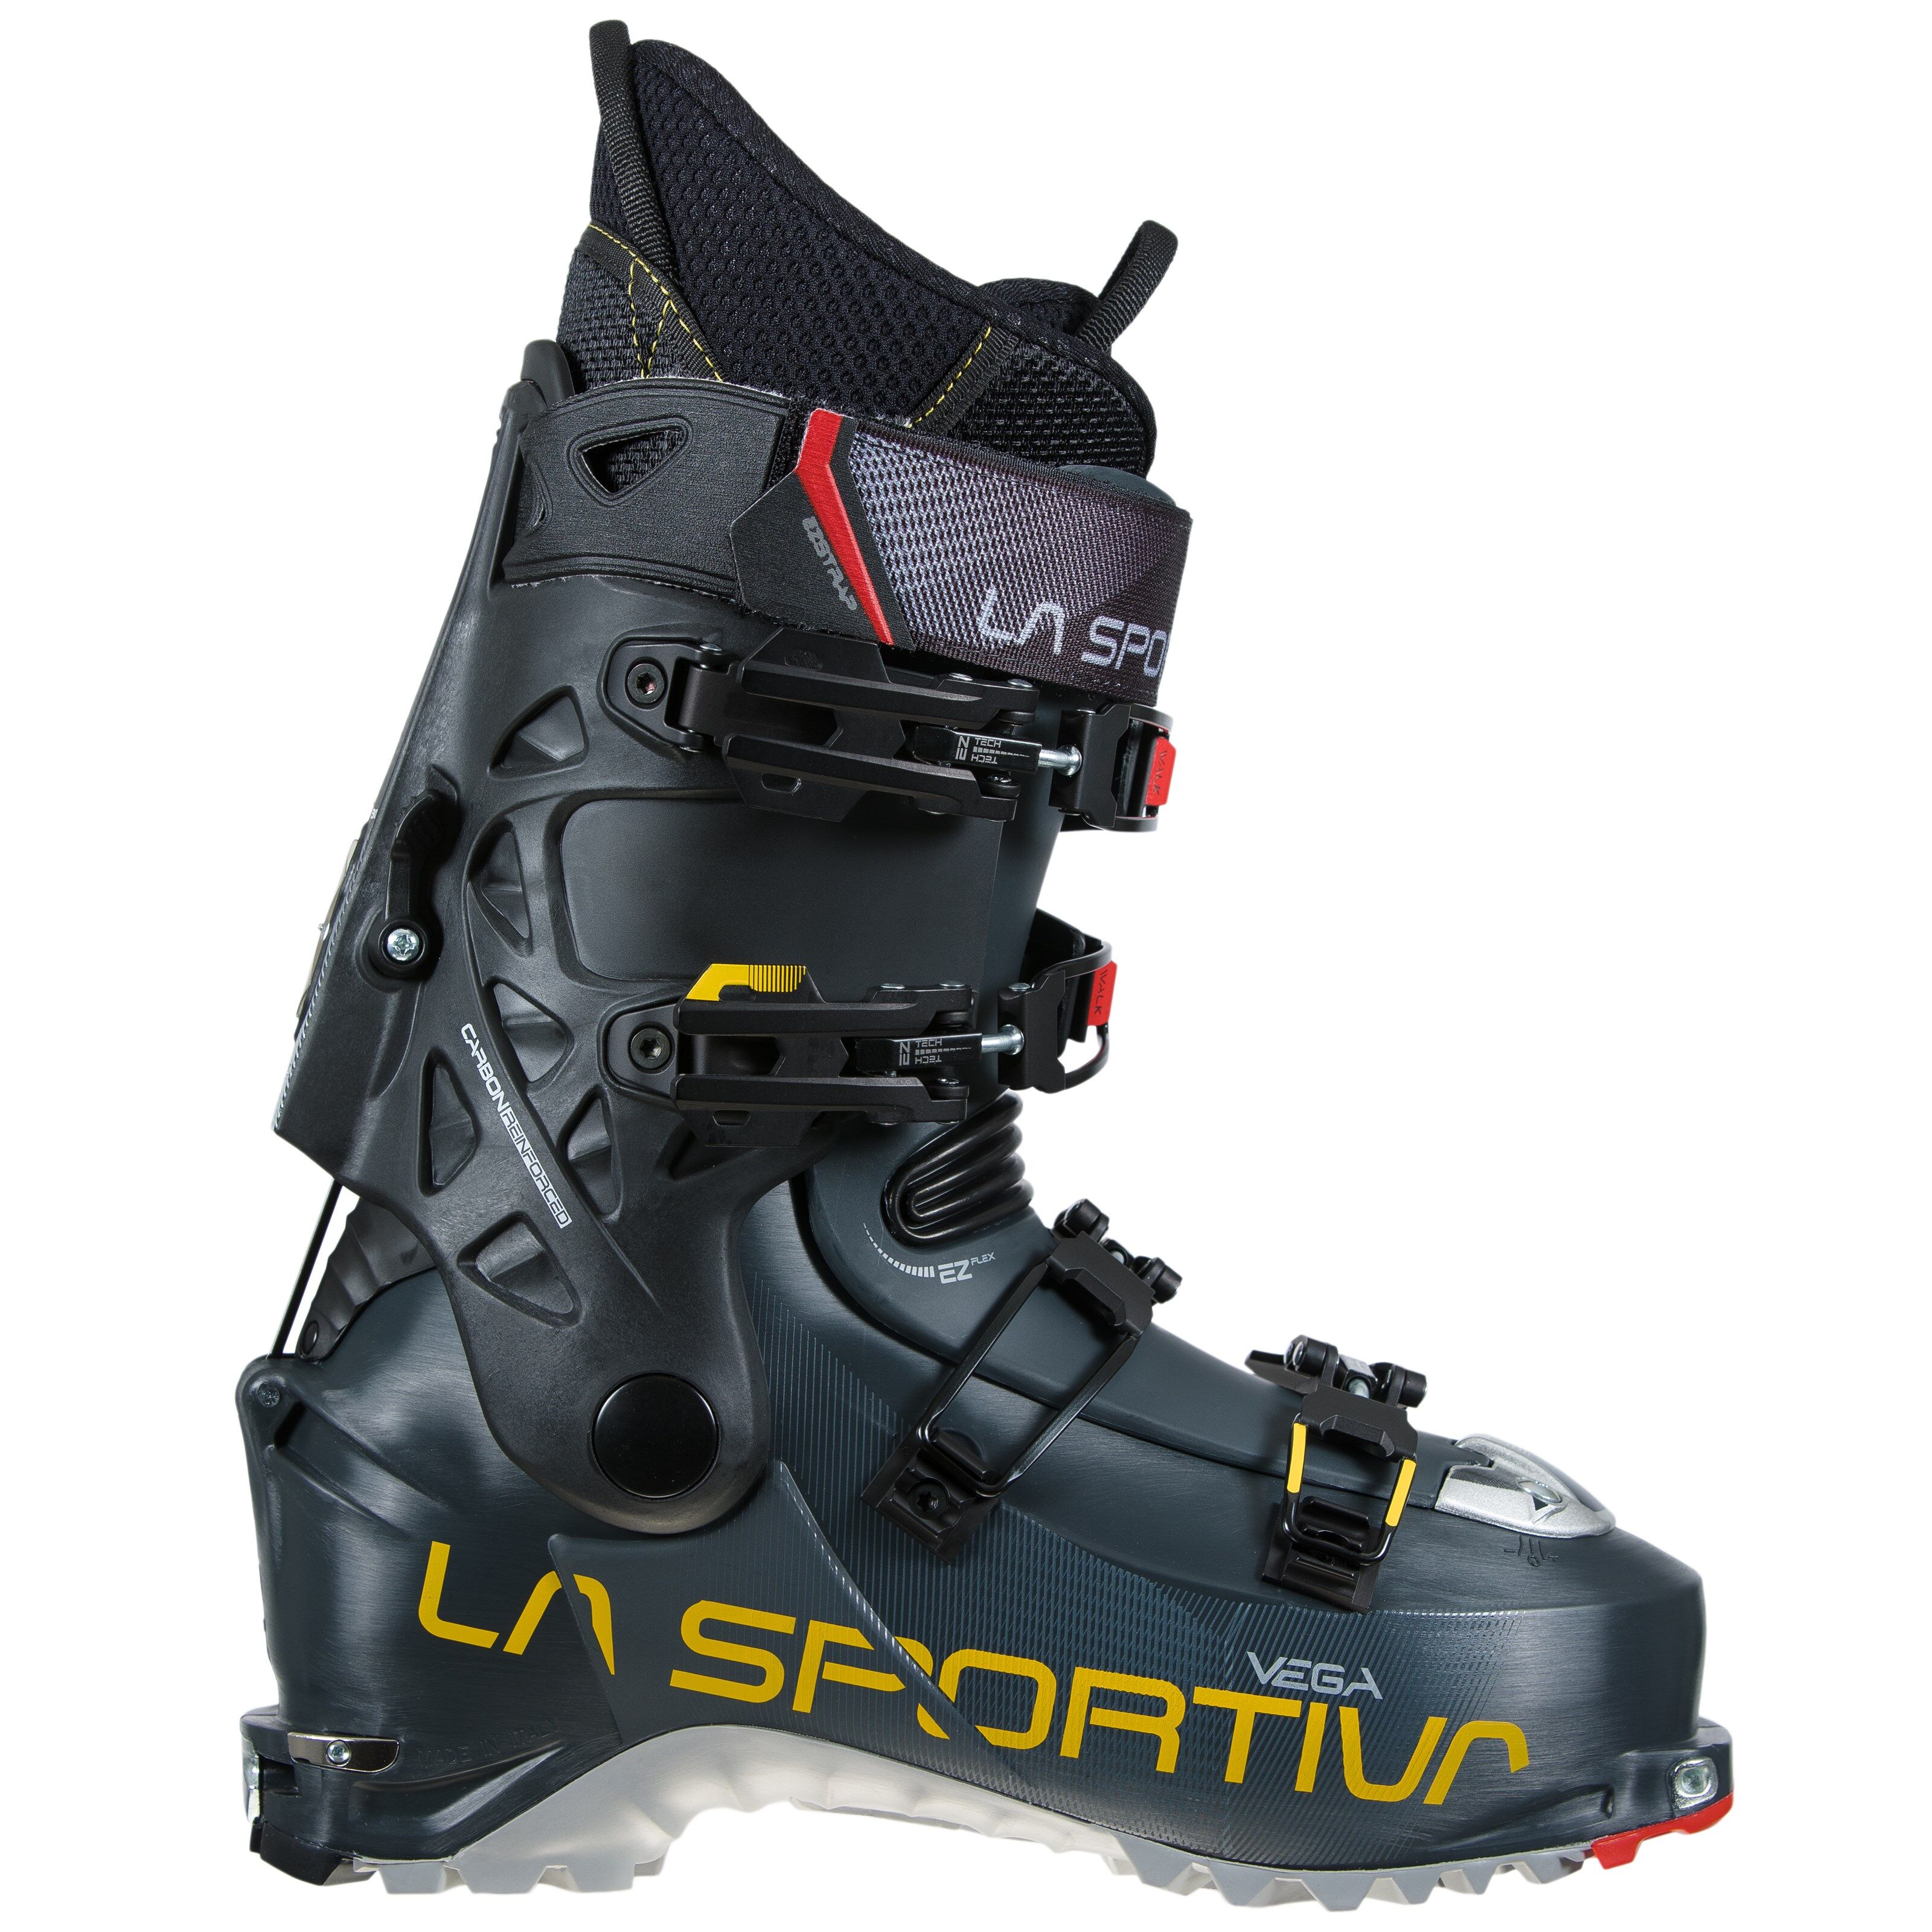 La Sportiva Vega toppturstøvler, herre 21/22 Carbon/Yellow 27,5 2020